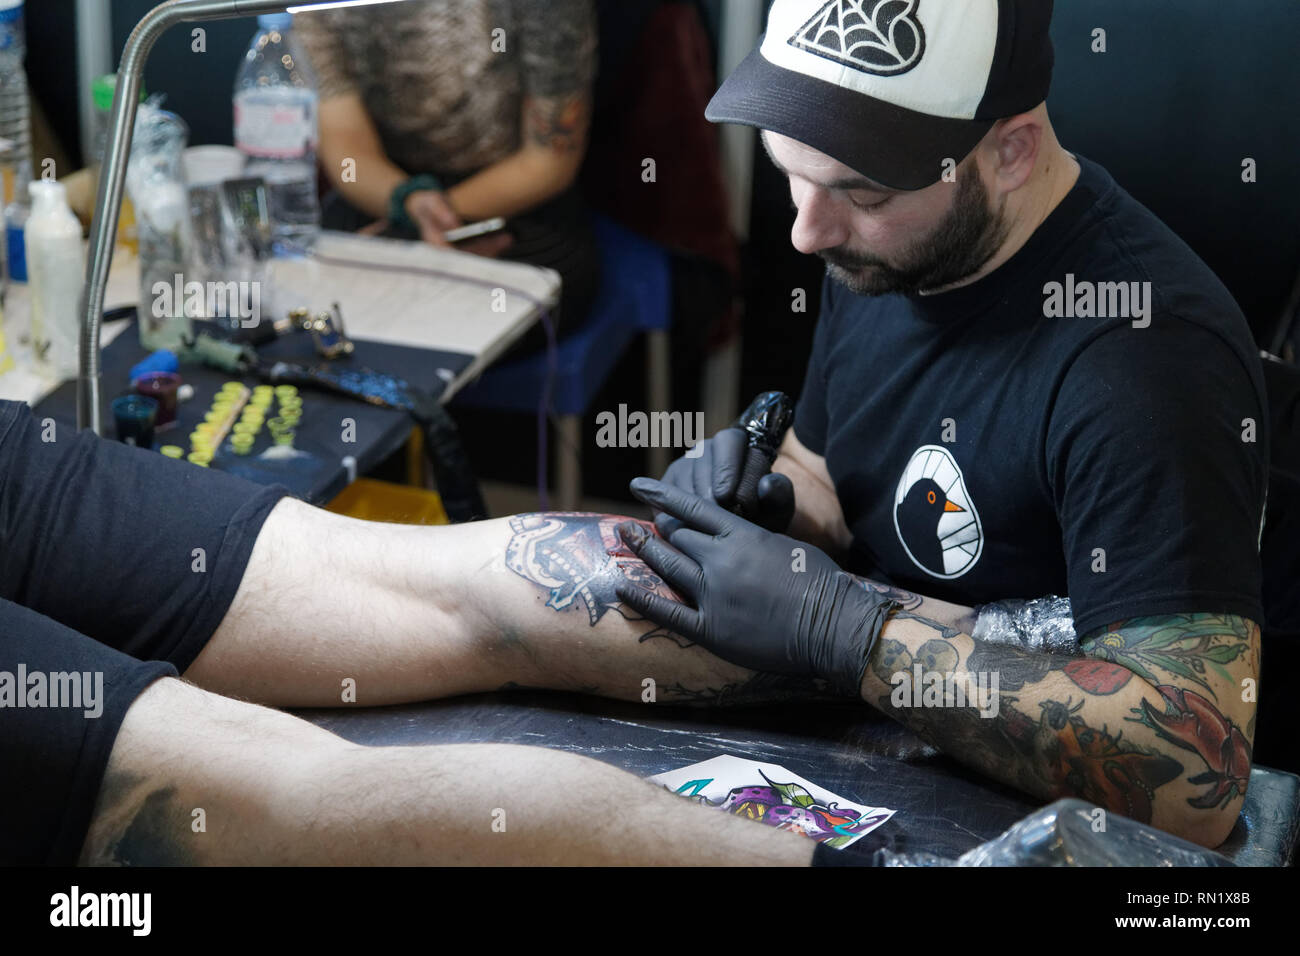 París, Francia. 15 Feb, 2019. Artista, Siemor durante la 9ª edición del Mondial du Tatouage (Mundo tatuaje) el 15 de febrero de 2019 en la Grande Halle de la Villette, en París, Francia. Crédito: Bernard Menigault/Alamy Live News Foto de stock